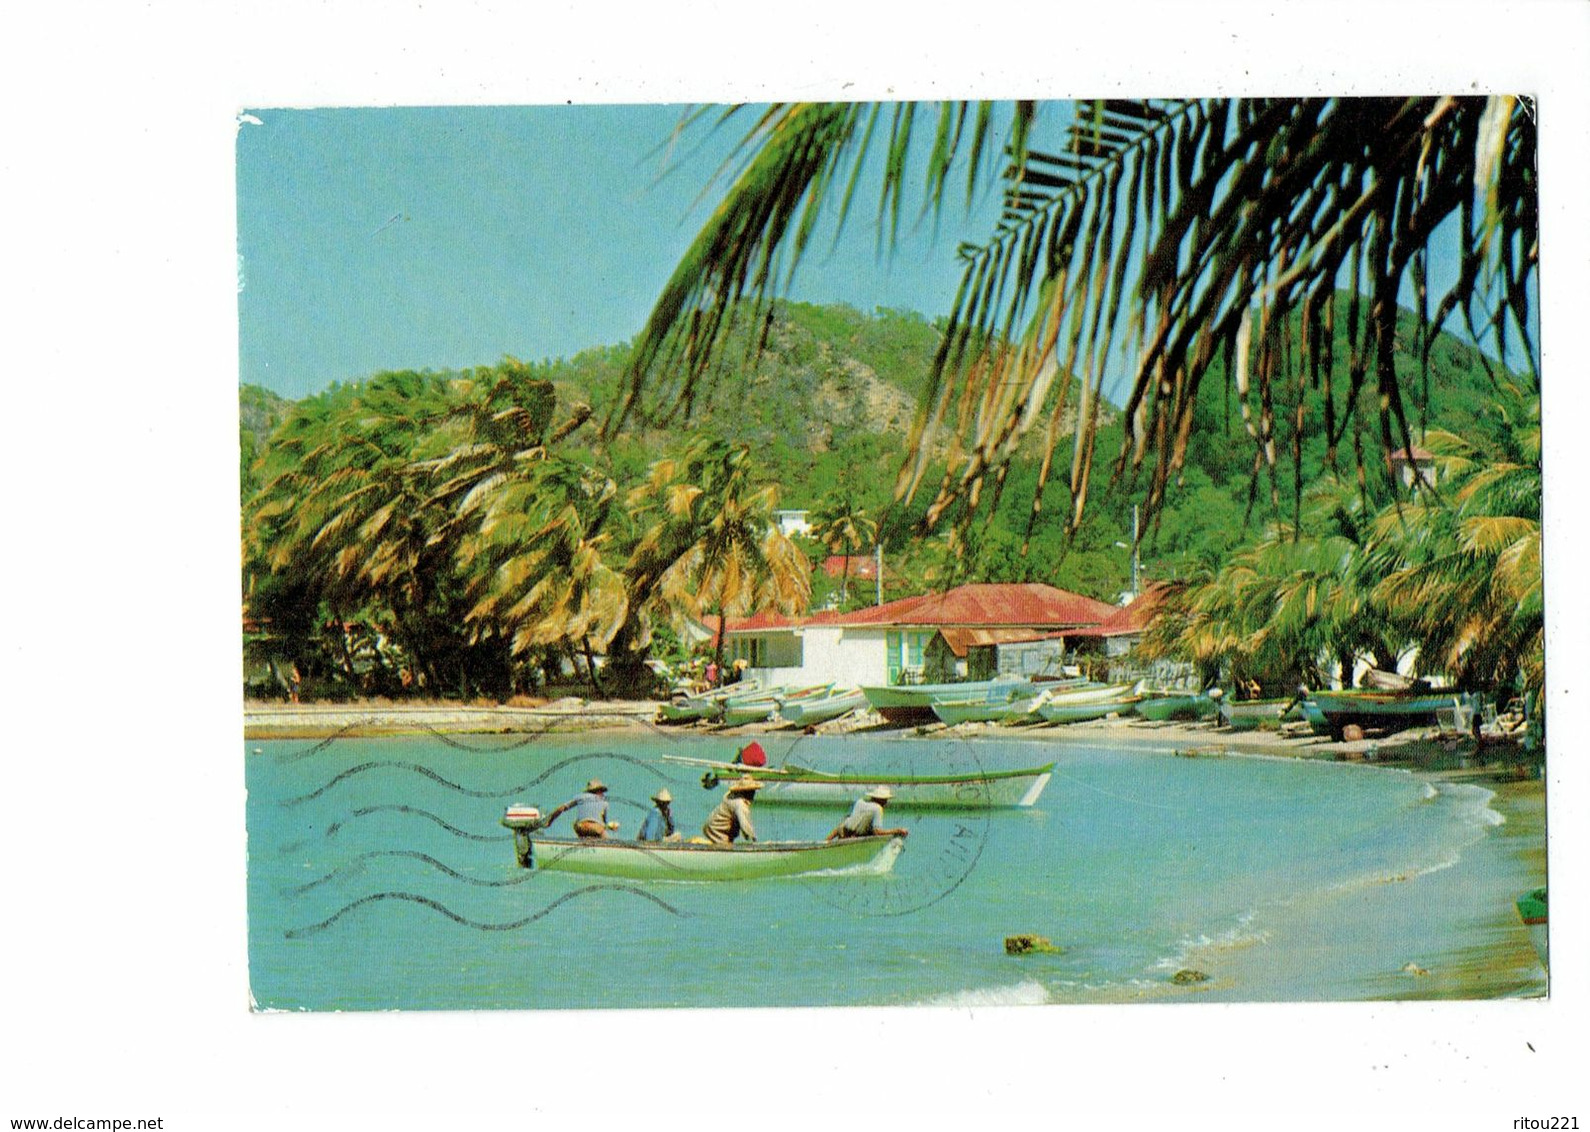 Cpm - Îles Des Saintes Chapelet D'îles En Guadeloupe - La Baie Fond De Curé - 1980 - Hachette 7273 - Bateau Animation - Saint Martin